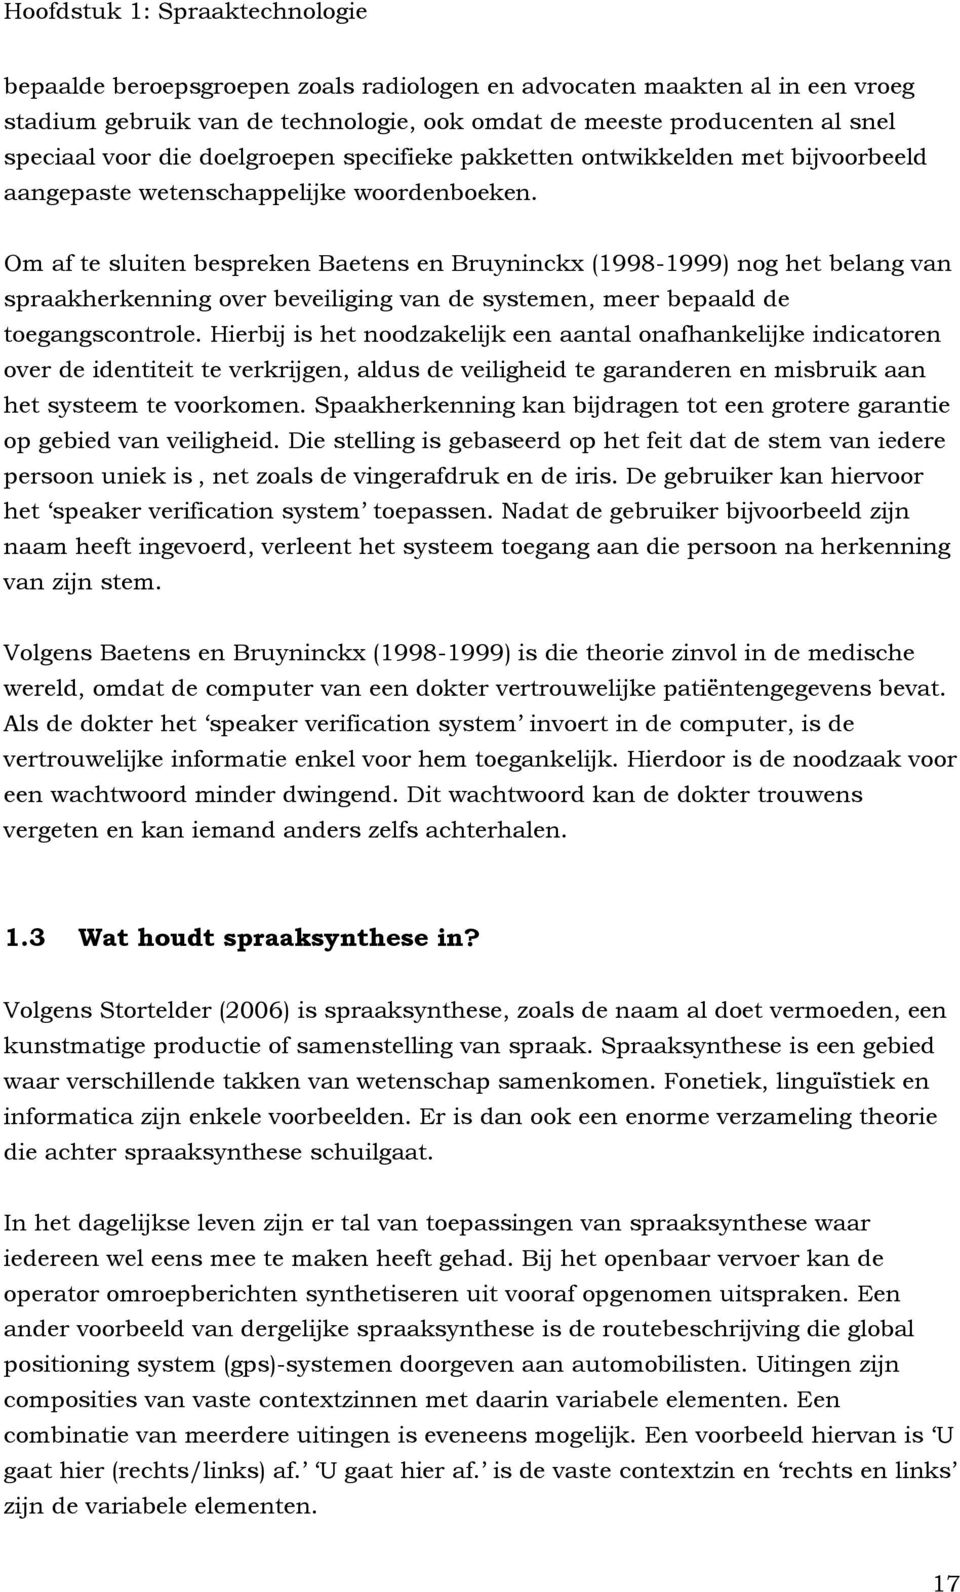 Om af te sluiten bespreken Baetens en Bruyninckx (1998-1999) nog het belang van spraakherkenning over beveiliging van de systemen, meer bepaald de toegangscontrole.